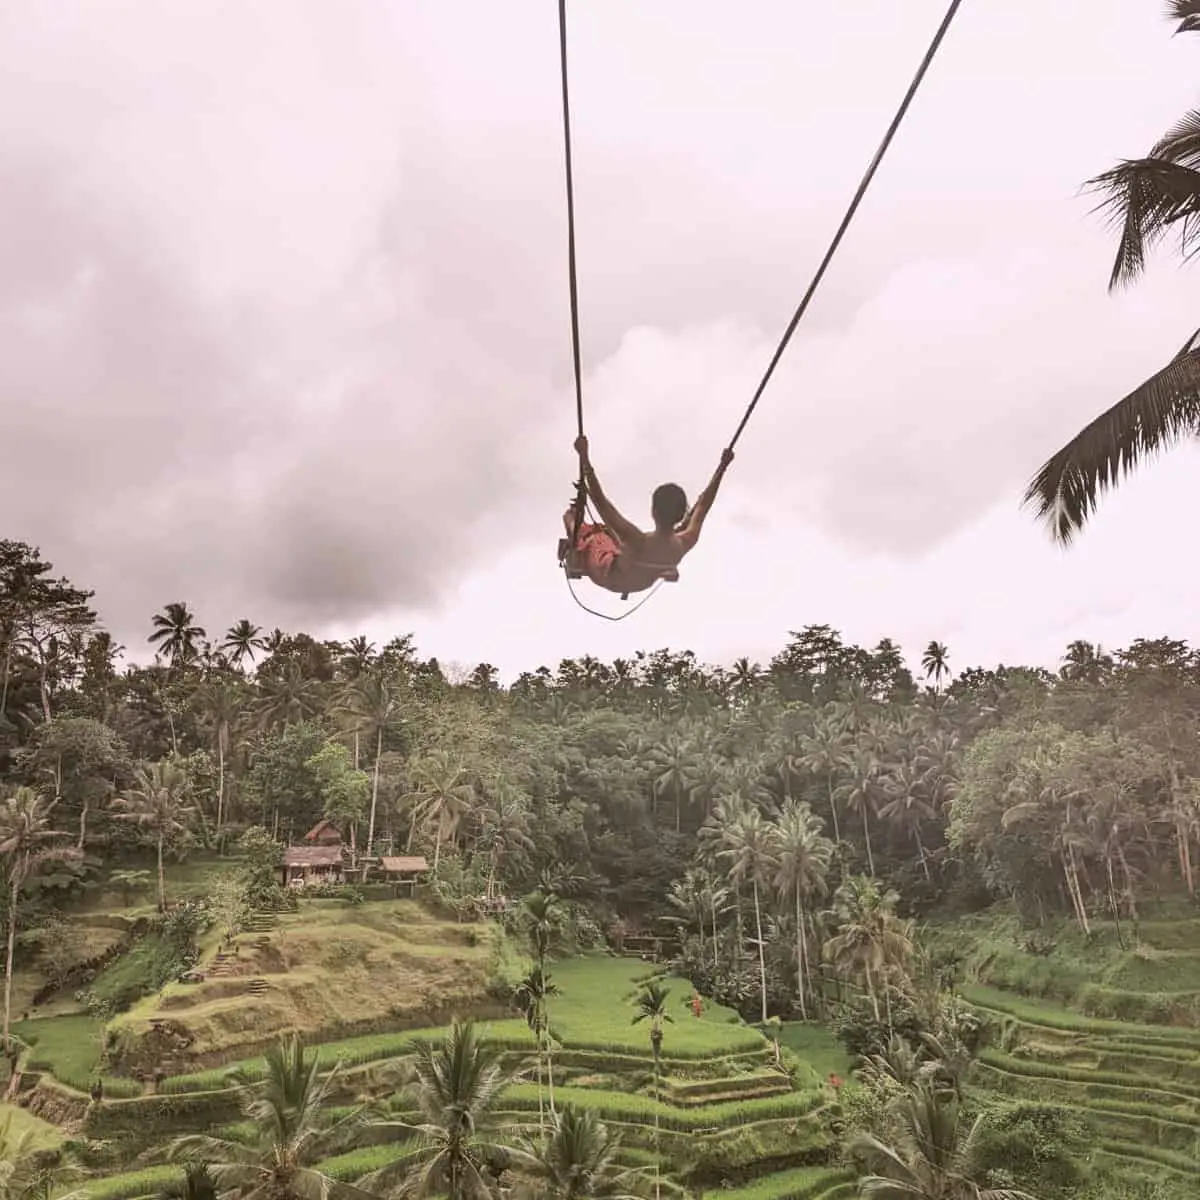 High Bali swing at Tegallalang Rice Field